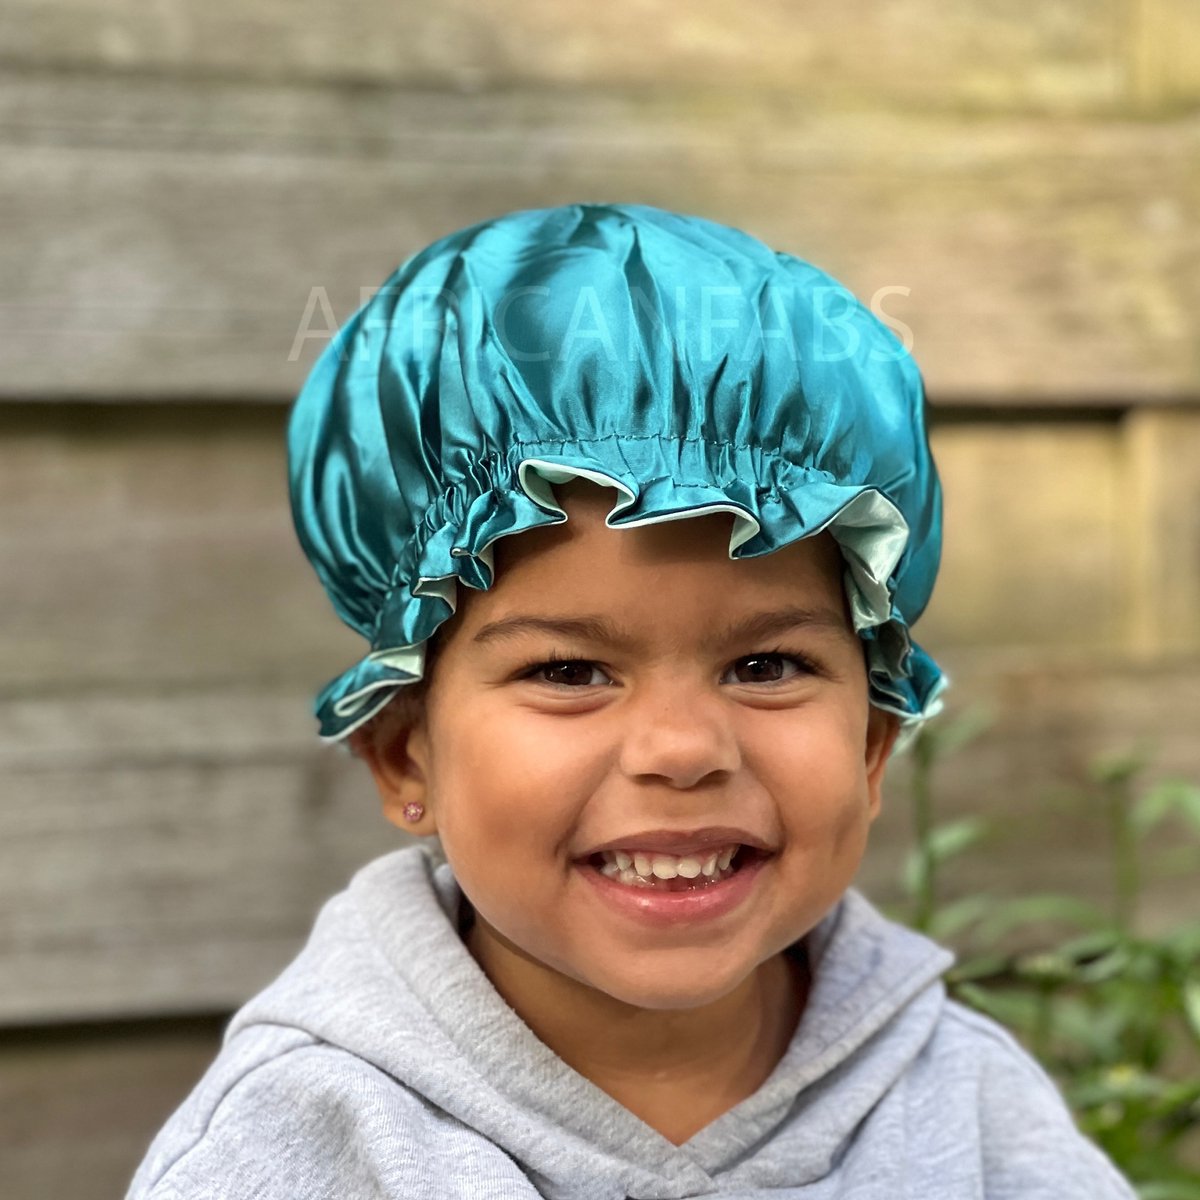 Groene Satijnen Slaapmuts voor Kinderen van 3-7 jaar AfricanFabs® / Kinder Hair Bonnet / Haar bonnet van Satijn / Satin bonnet